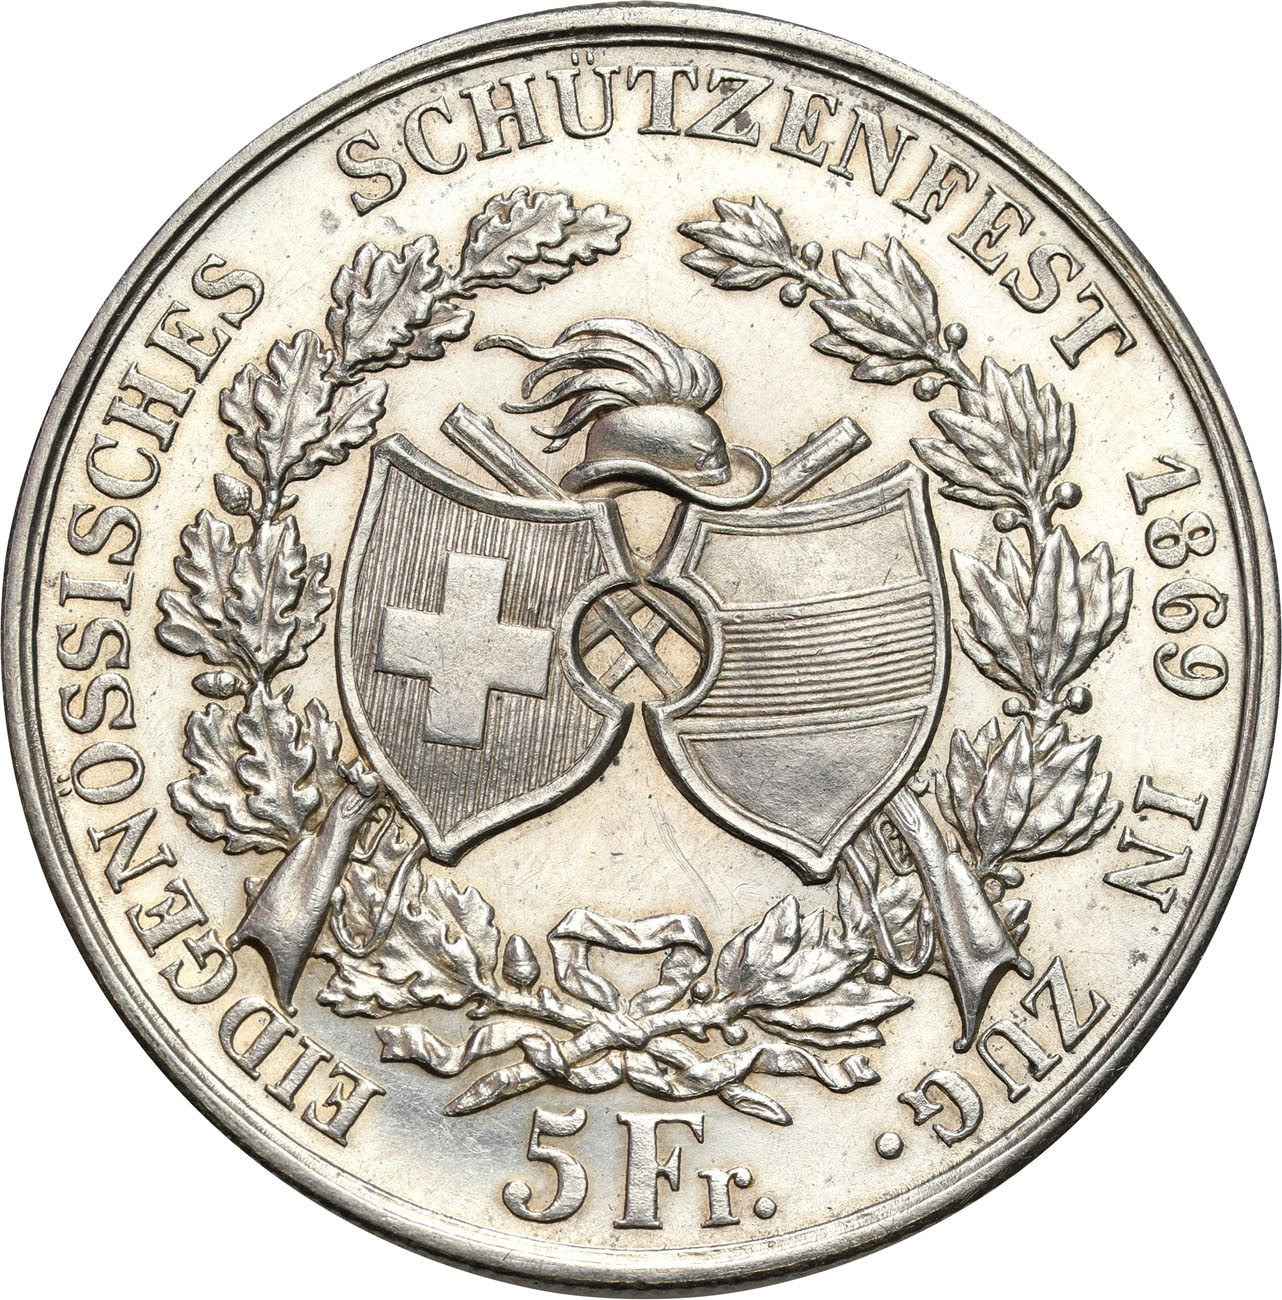 Szwajcaria. 5 franków strzeleckie w Zug 1869, Berno